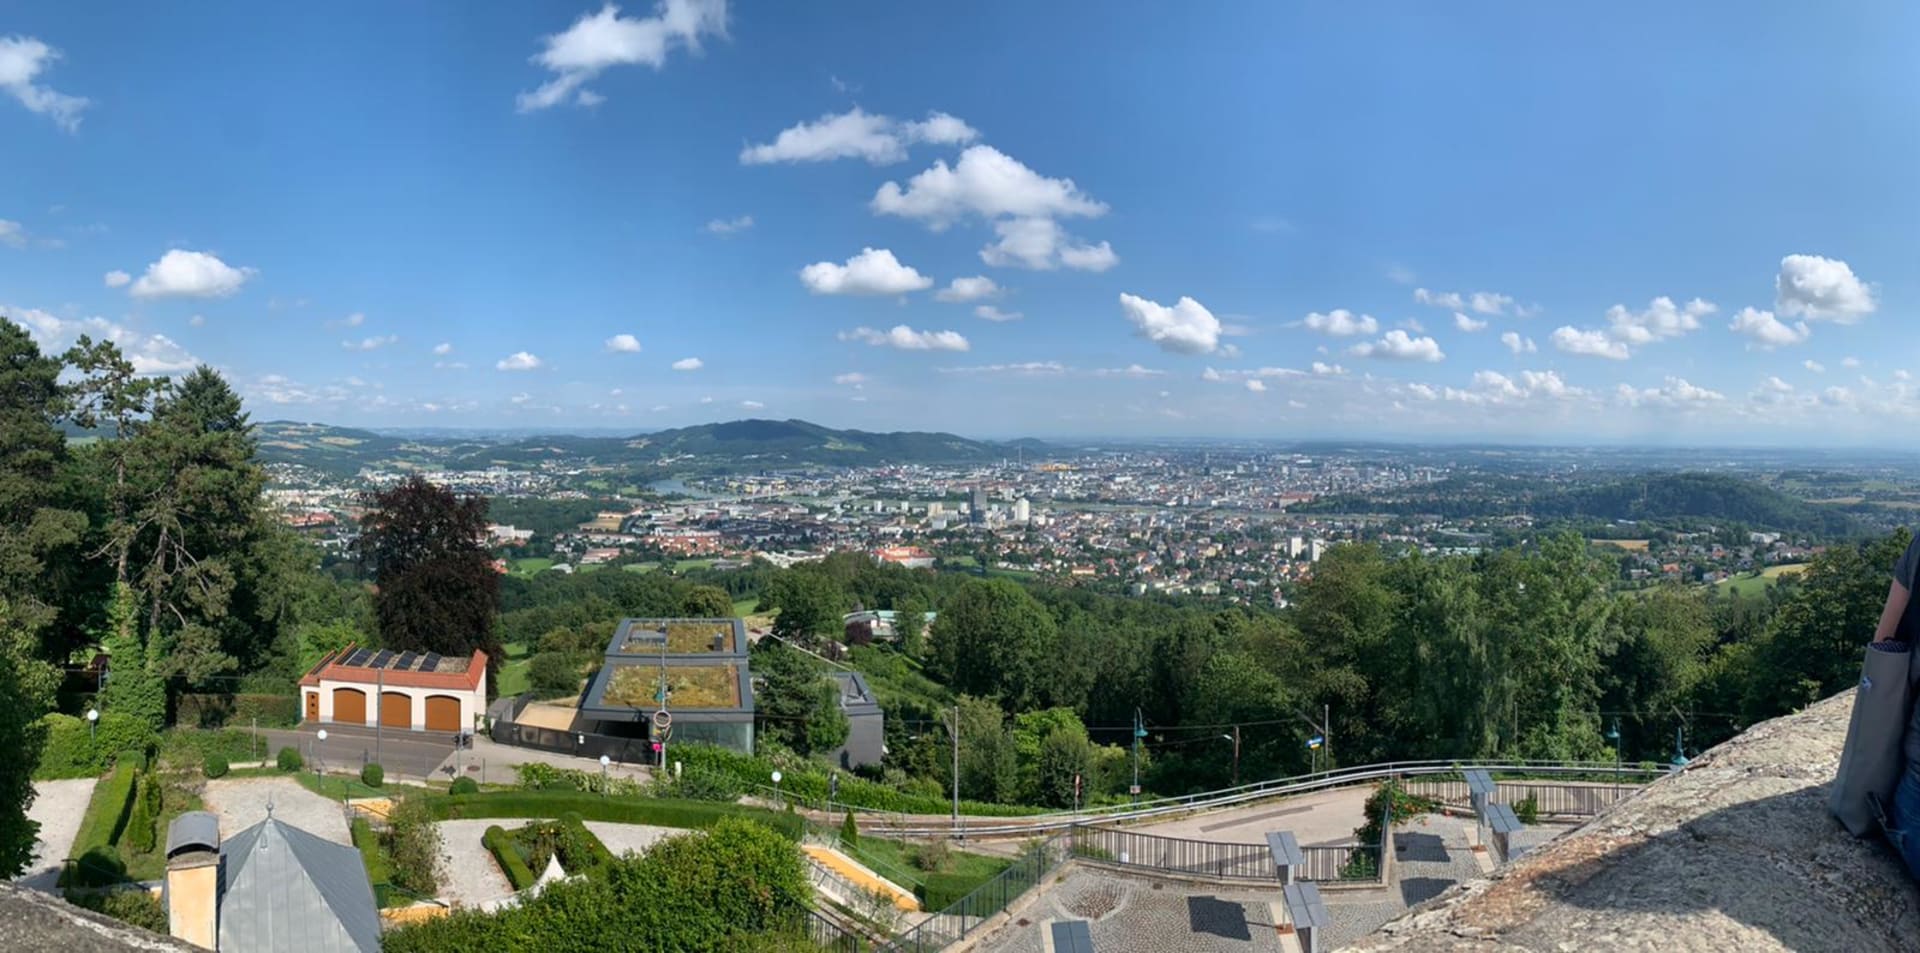 Výhled na město z kopce Pöstlingberg